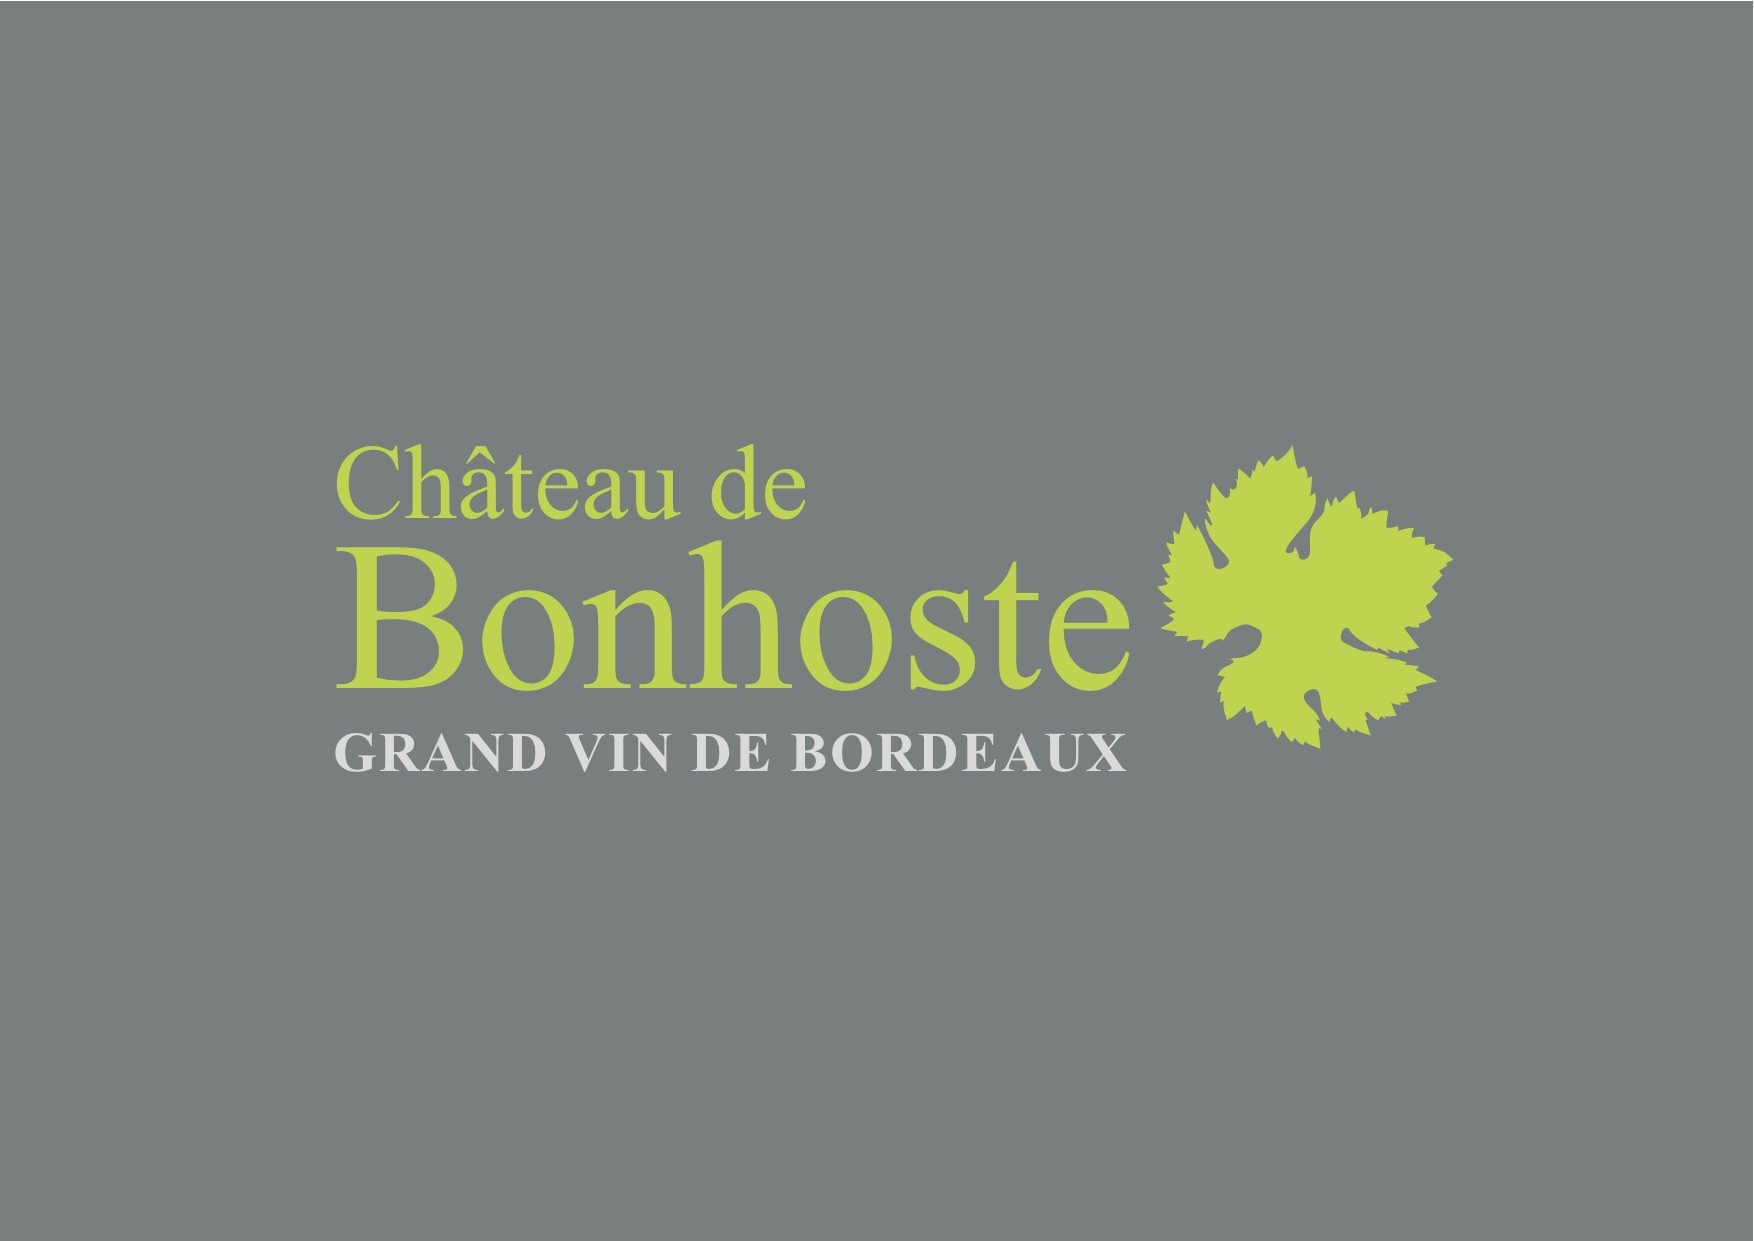 Chateau de Bonhoste